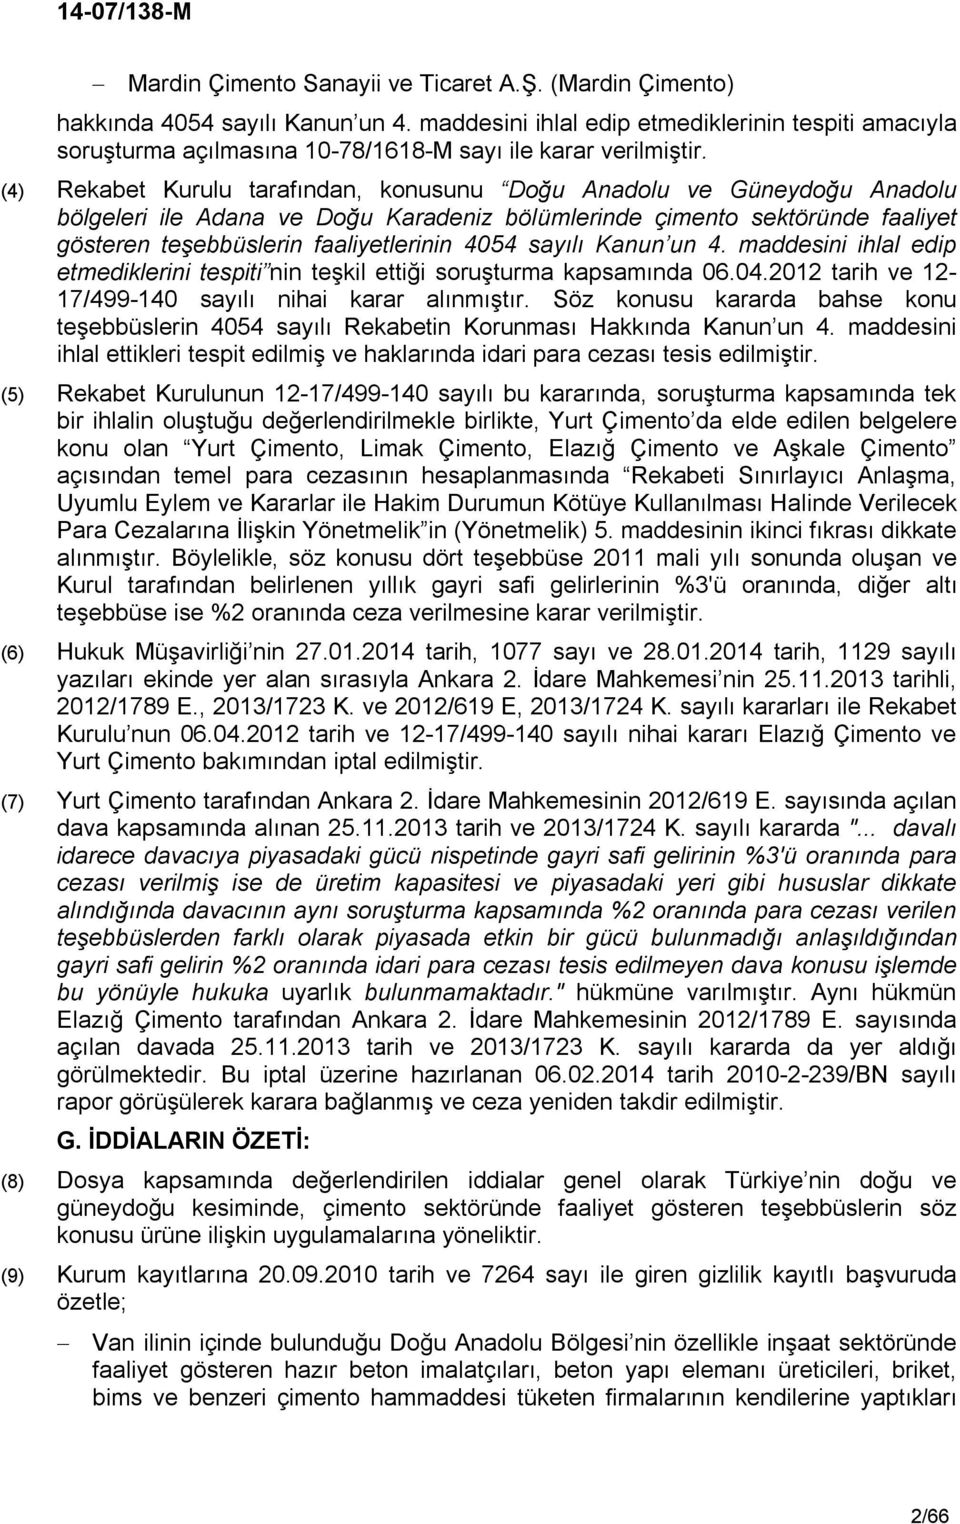 (4) Rekabet Kurulu tarafından, konusunu Doğu Anadolu ve Güneydoğu Anadolu bölgeleri ile Adana ve Doğu Karadeniz bölümlerinde çimento sektöründe faaliyet gösteren teşebbüslerin faaliyetlerinin 4054